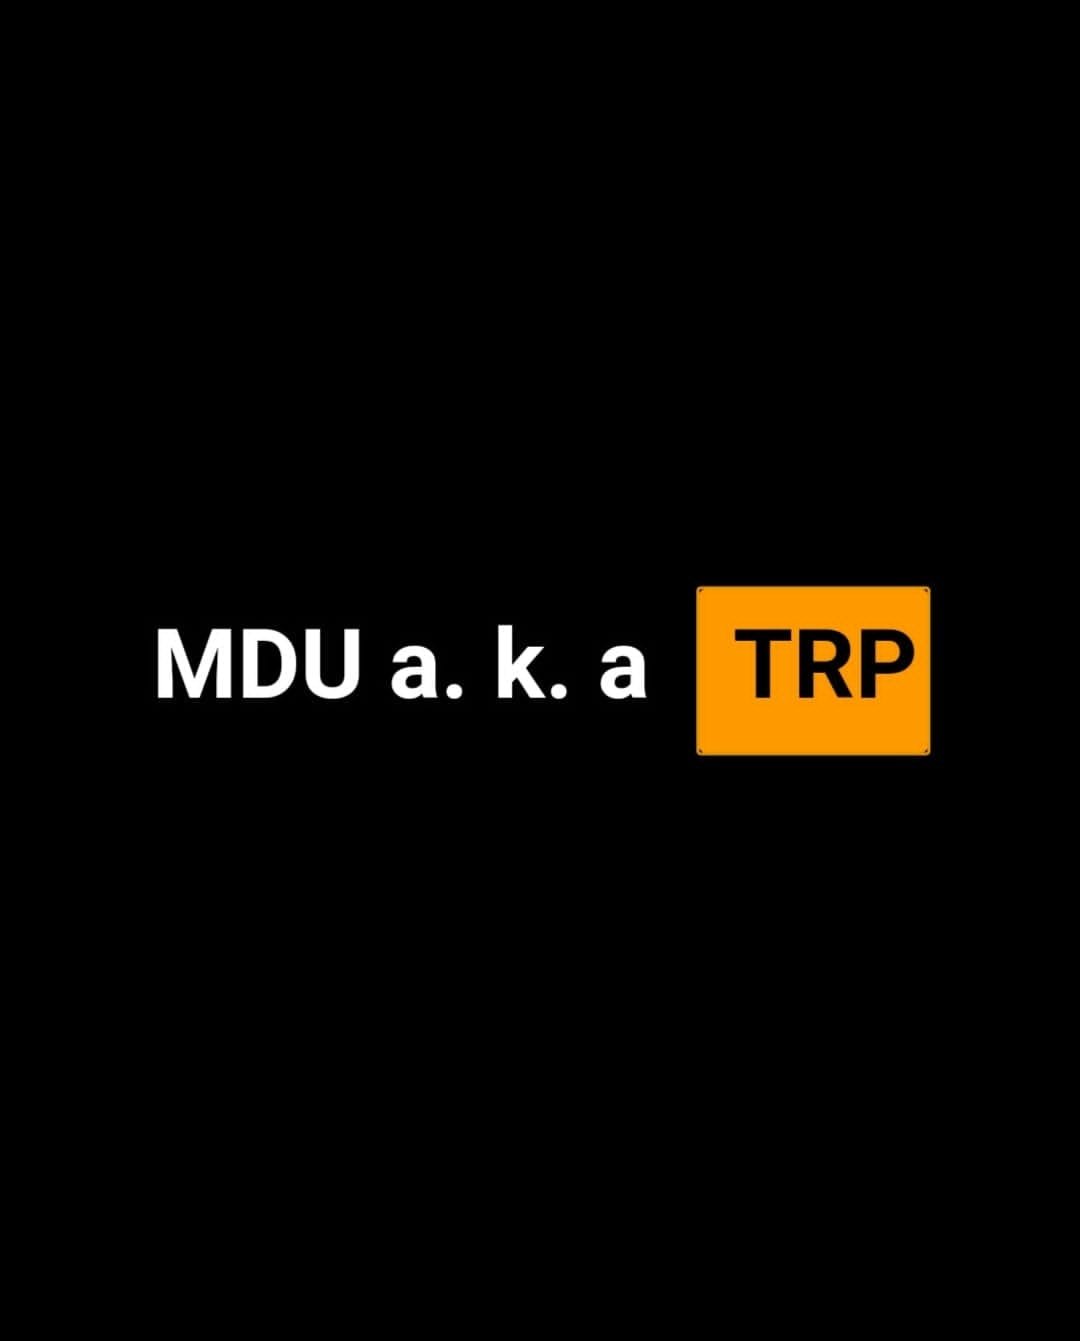 Mdu aka TRP & Bongza Yuu MP3 DOWNLOAD